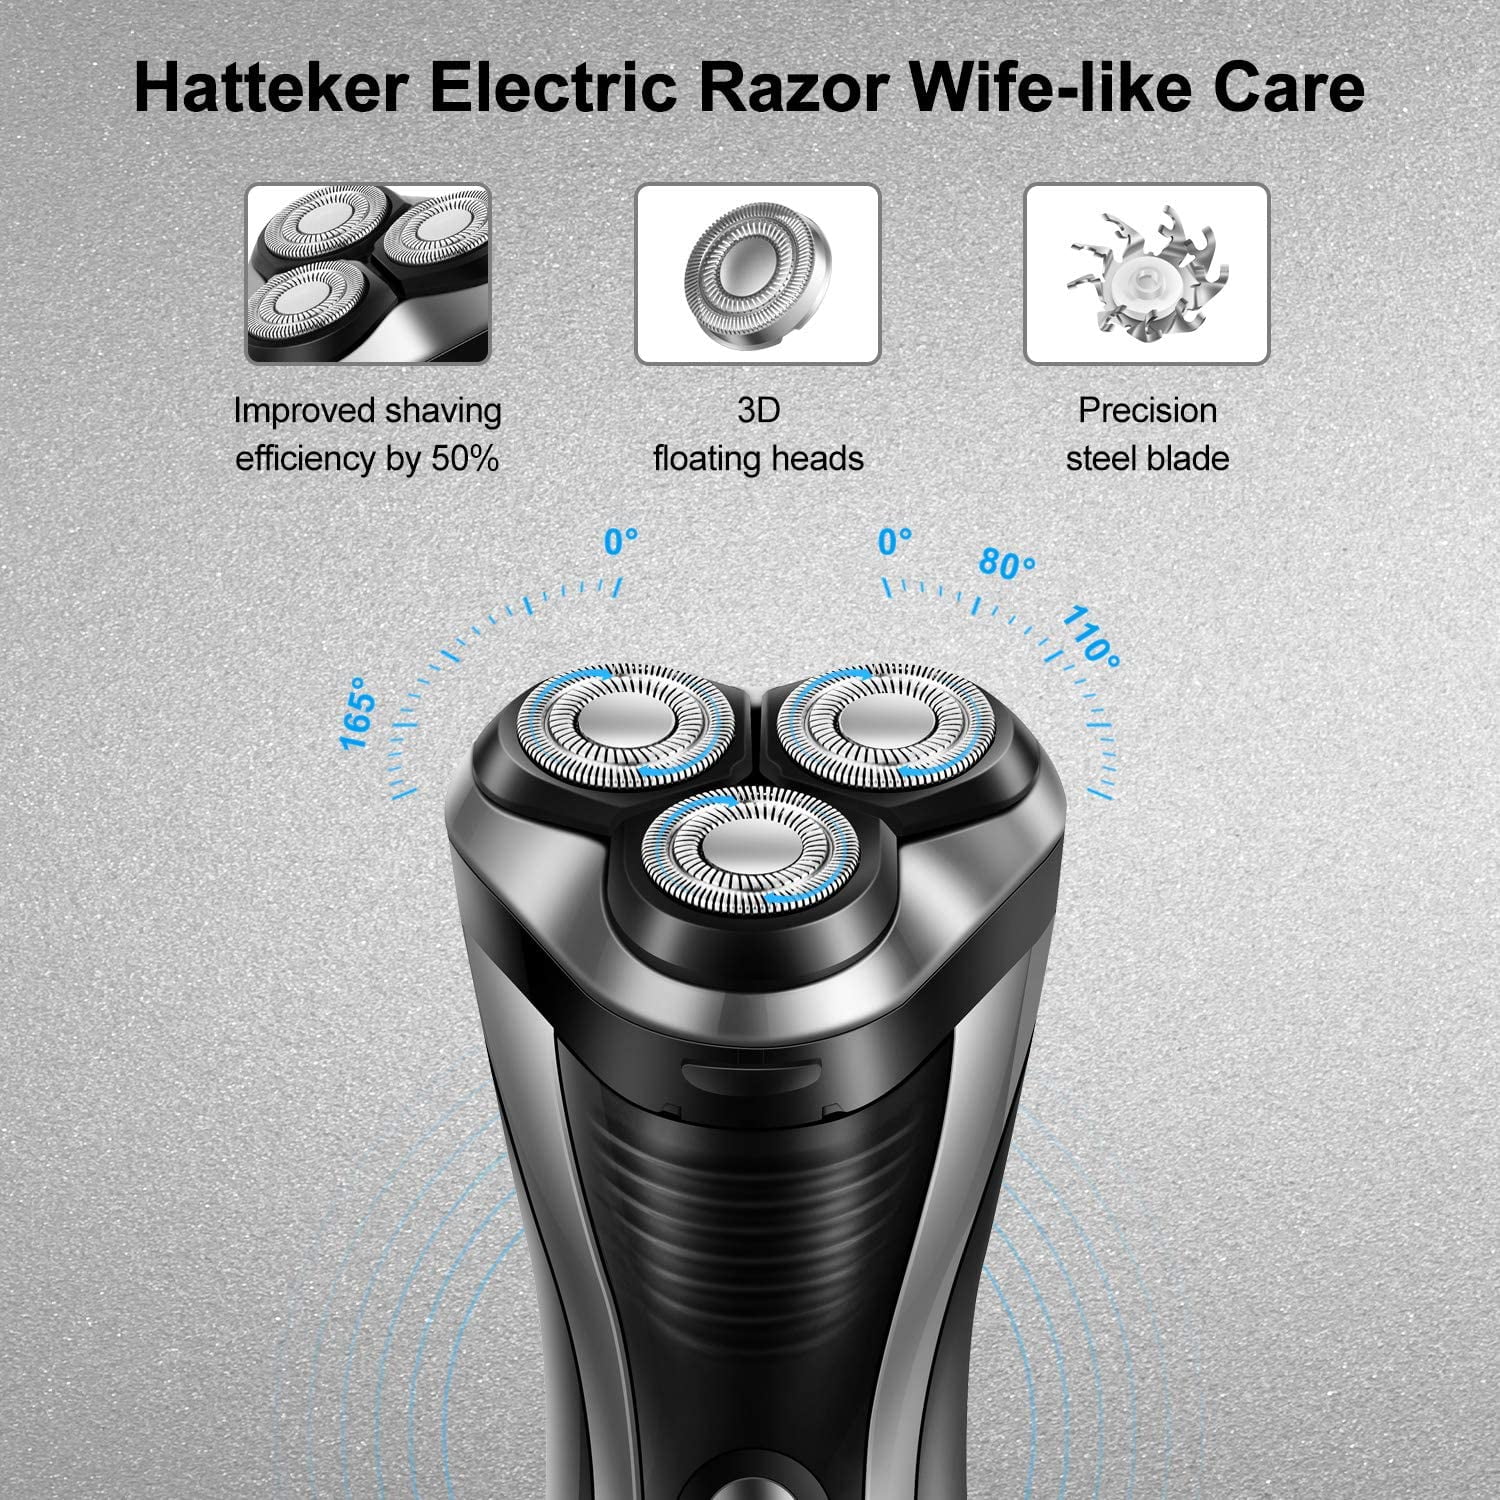 hatteker electric razor